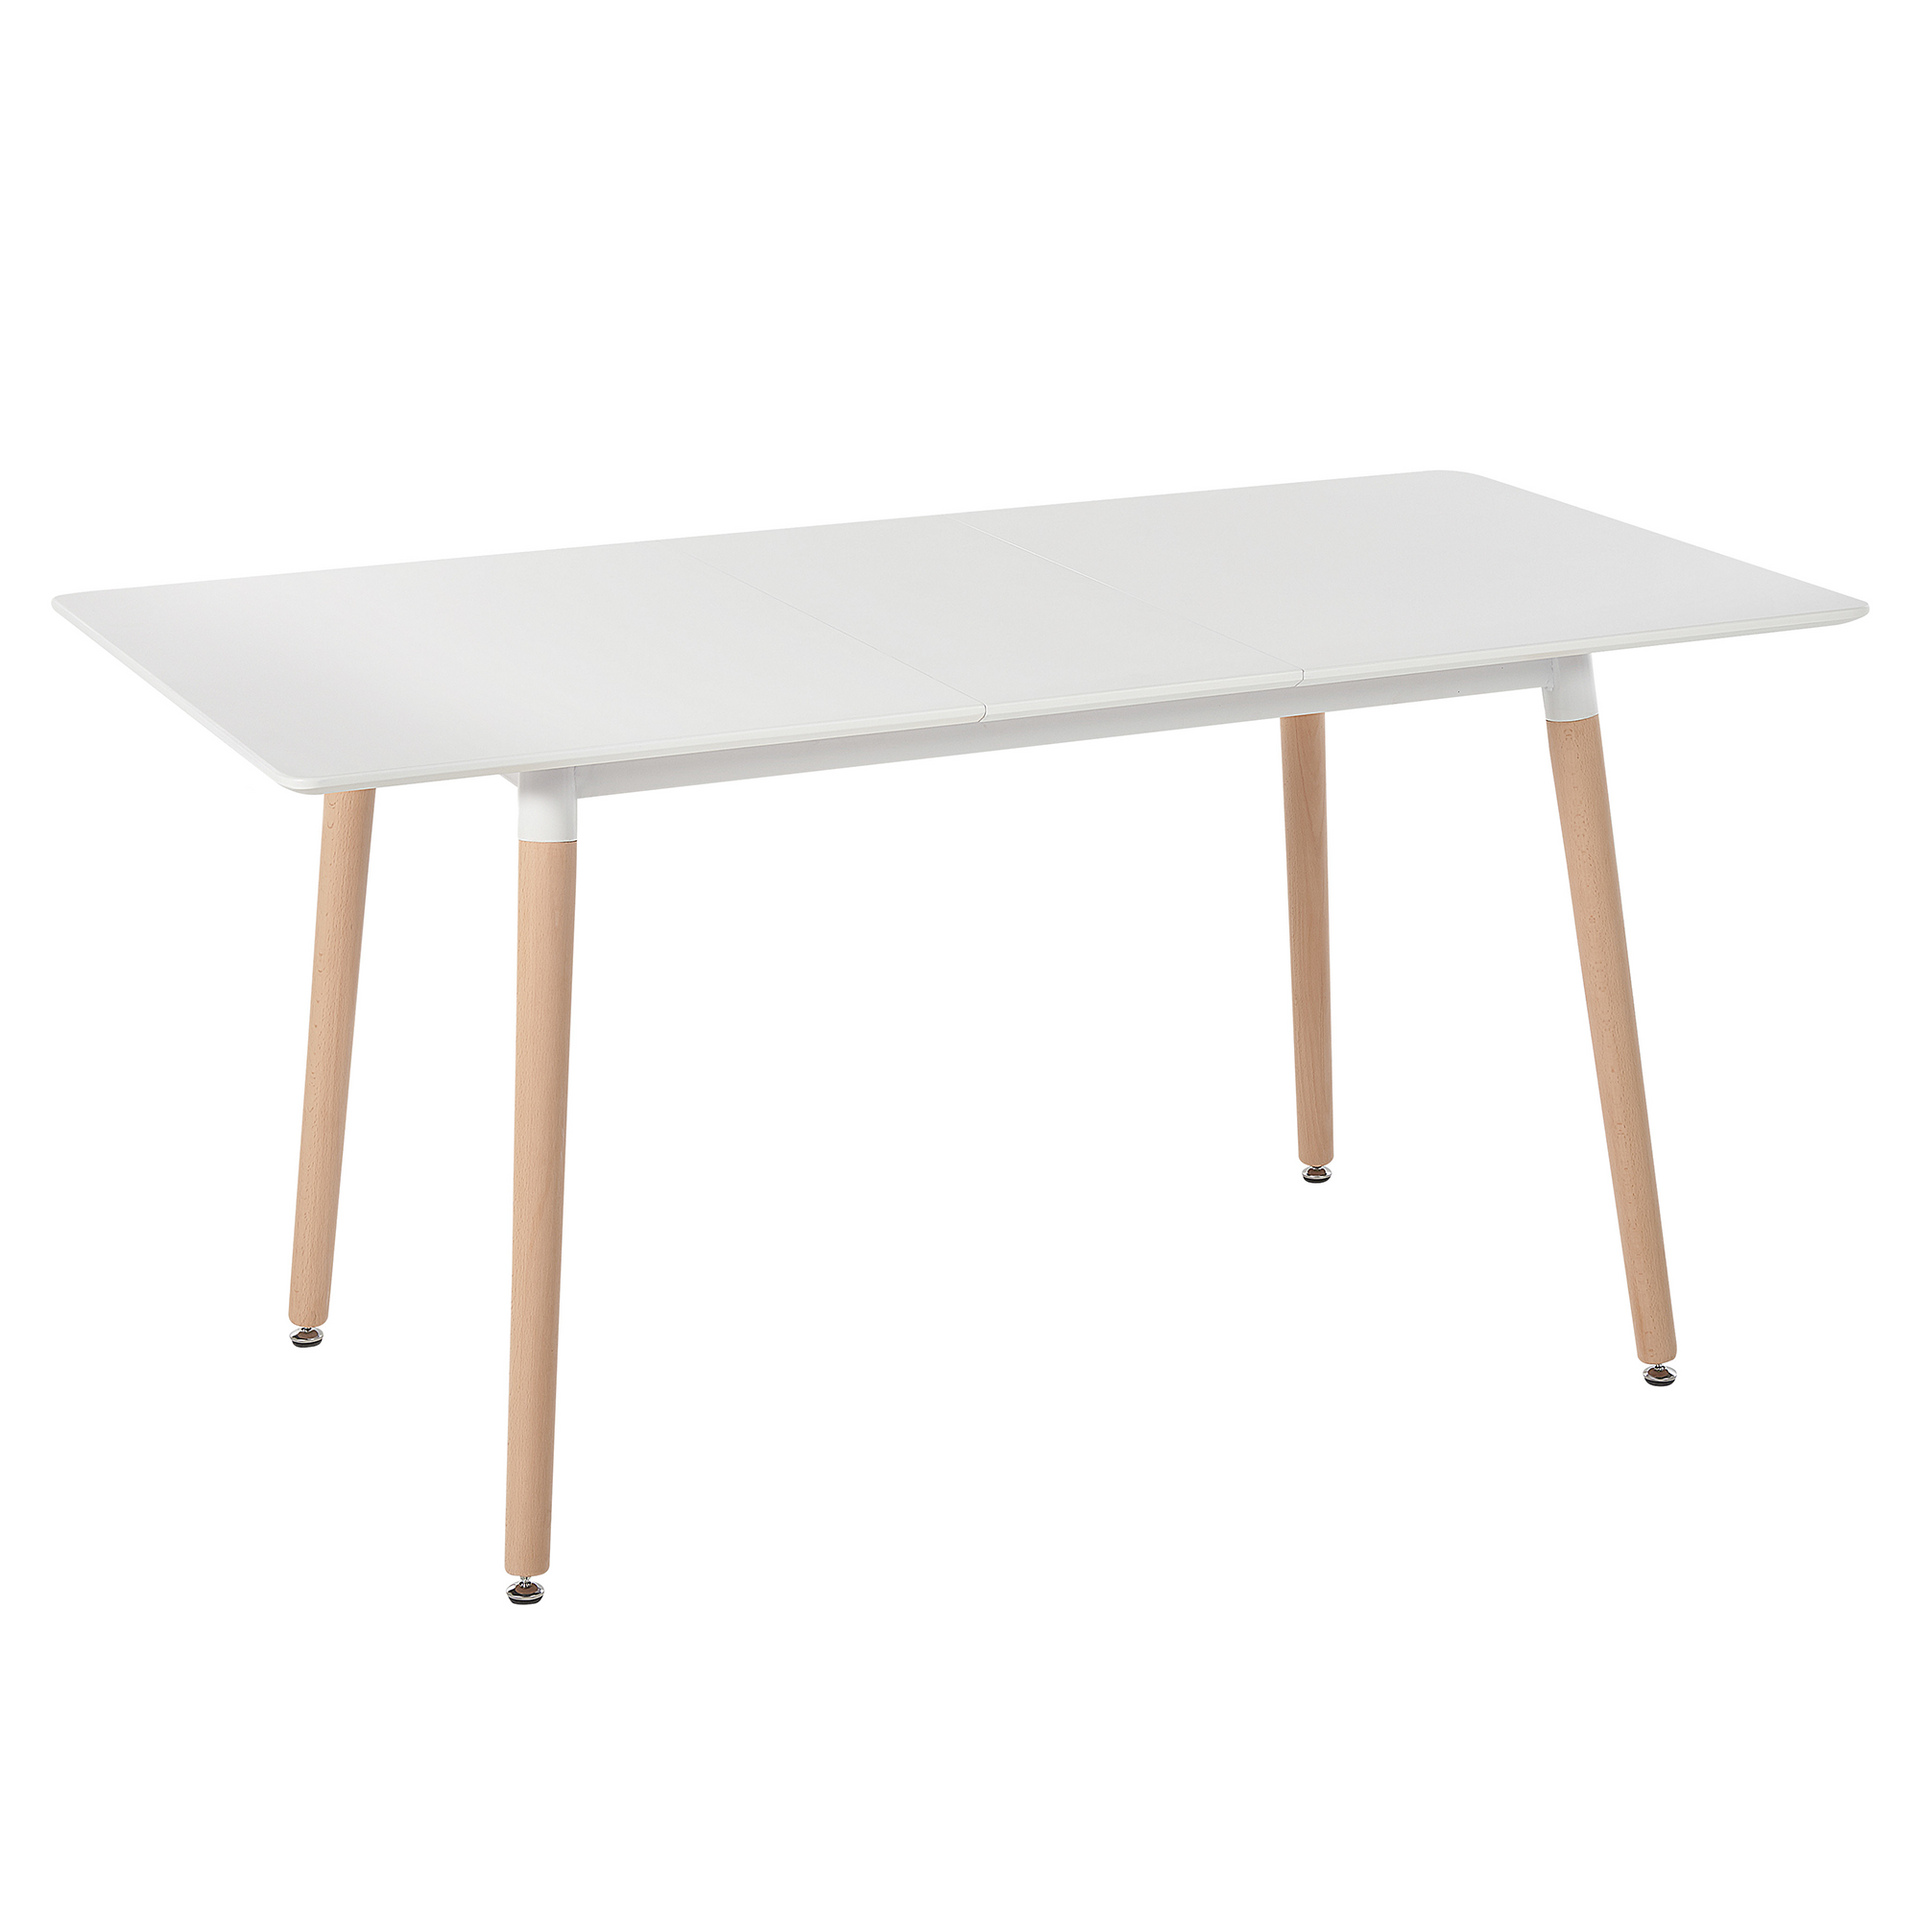 Zdjęcia - Stół kuchenny Stół do jadalni rozkładany 120/150 x 80 cm biały z jasnym drewnem MIRABEL